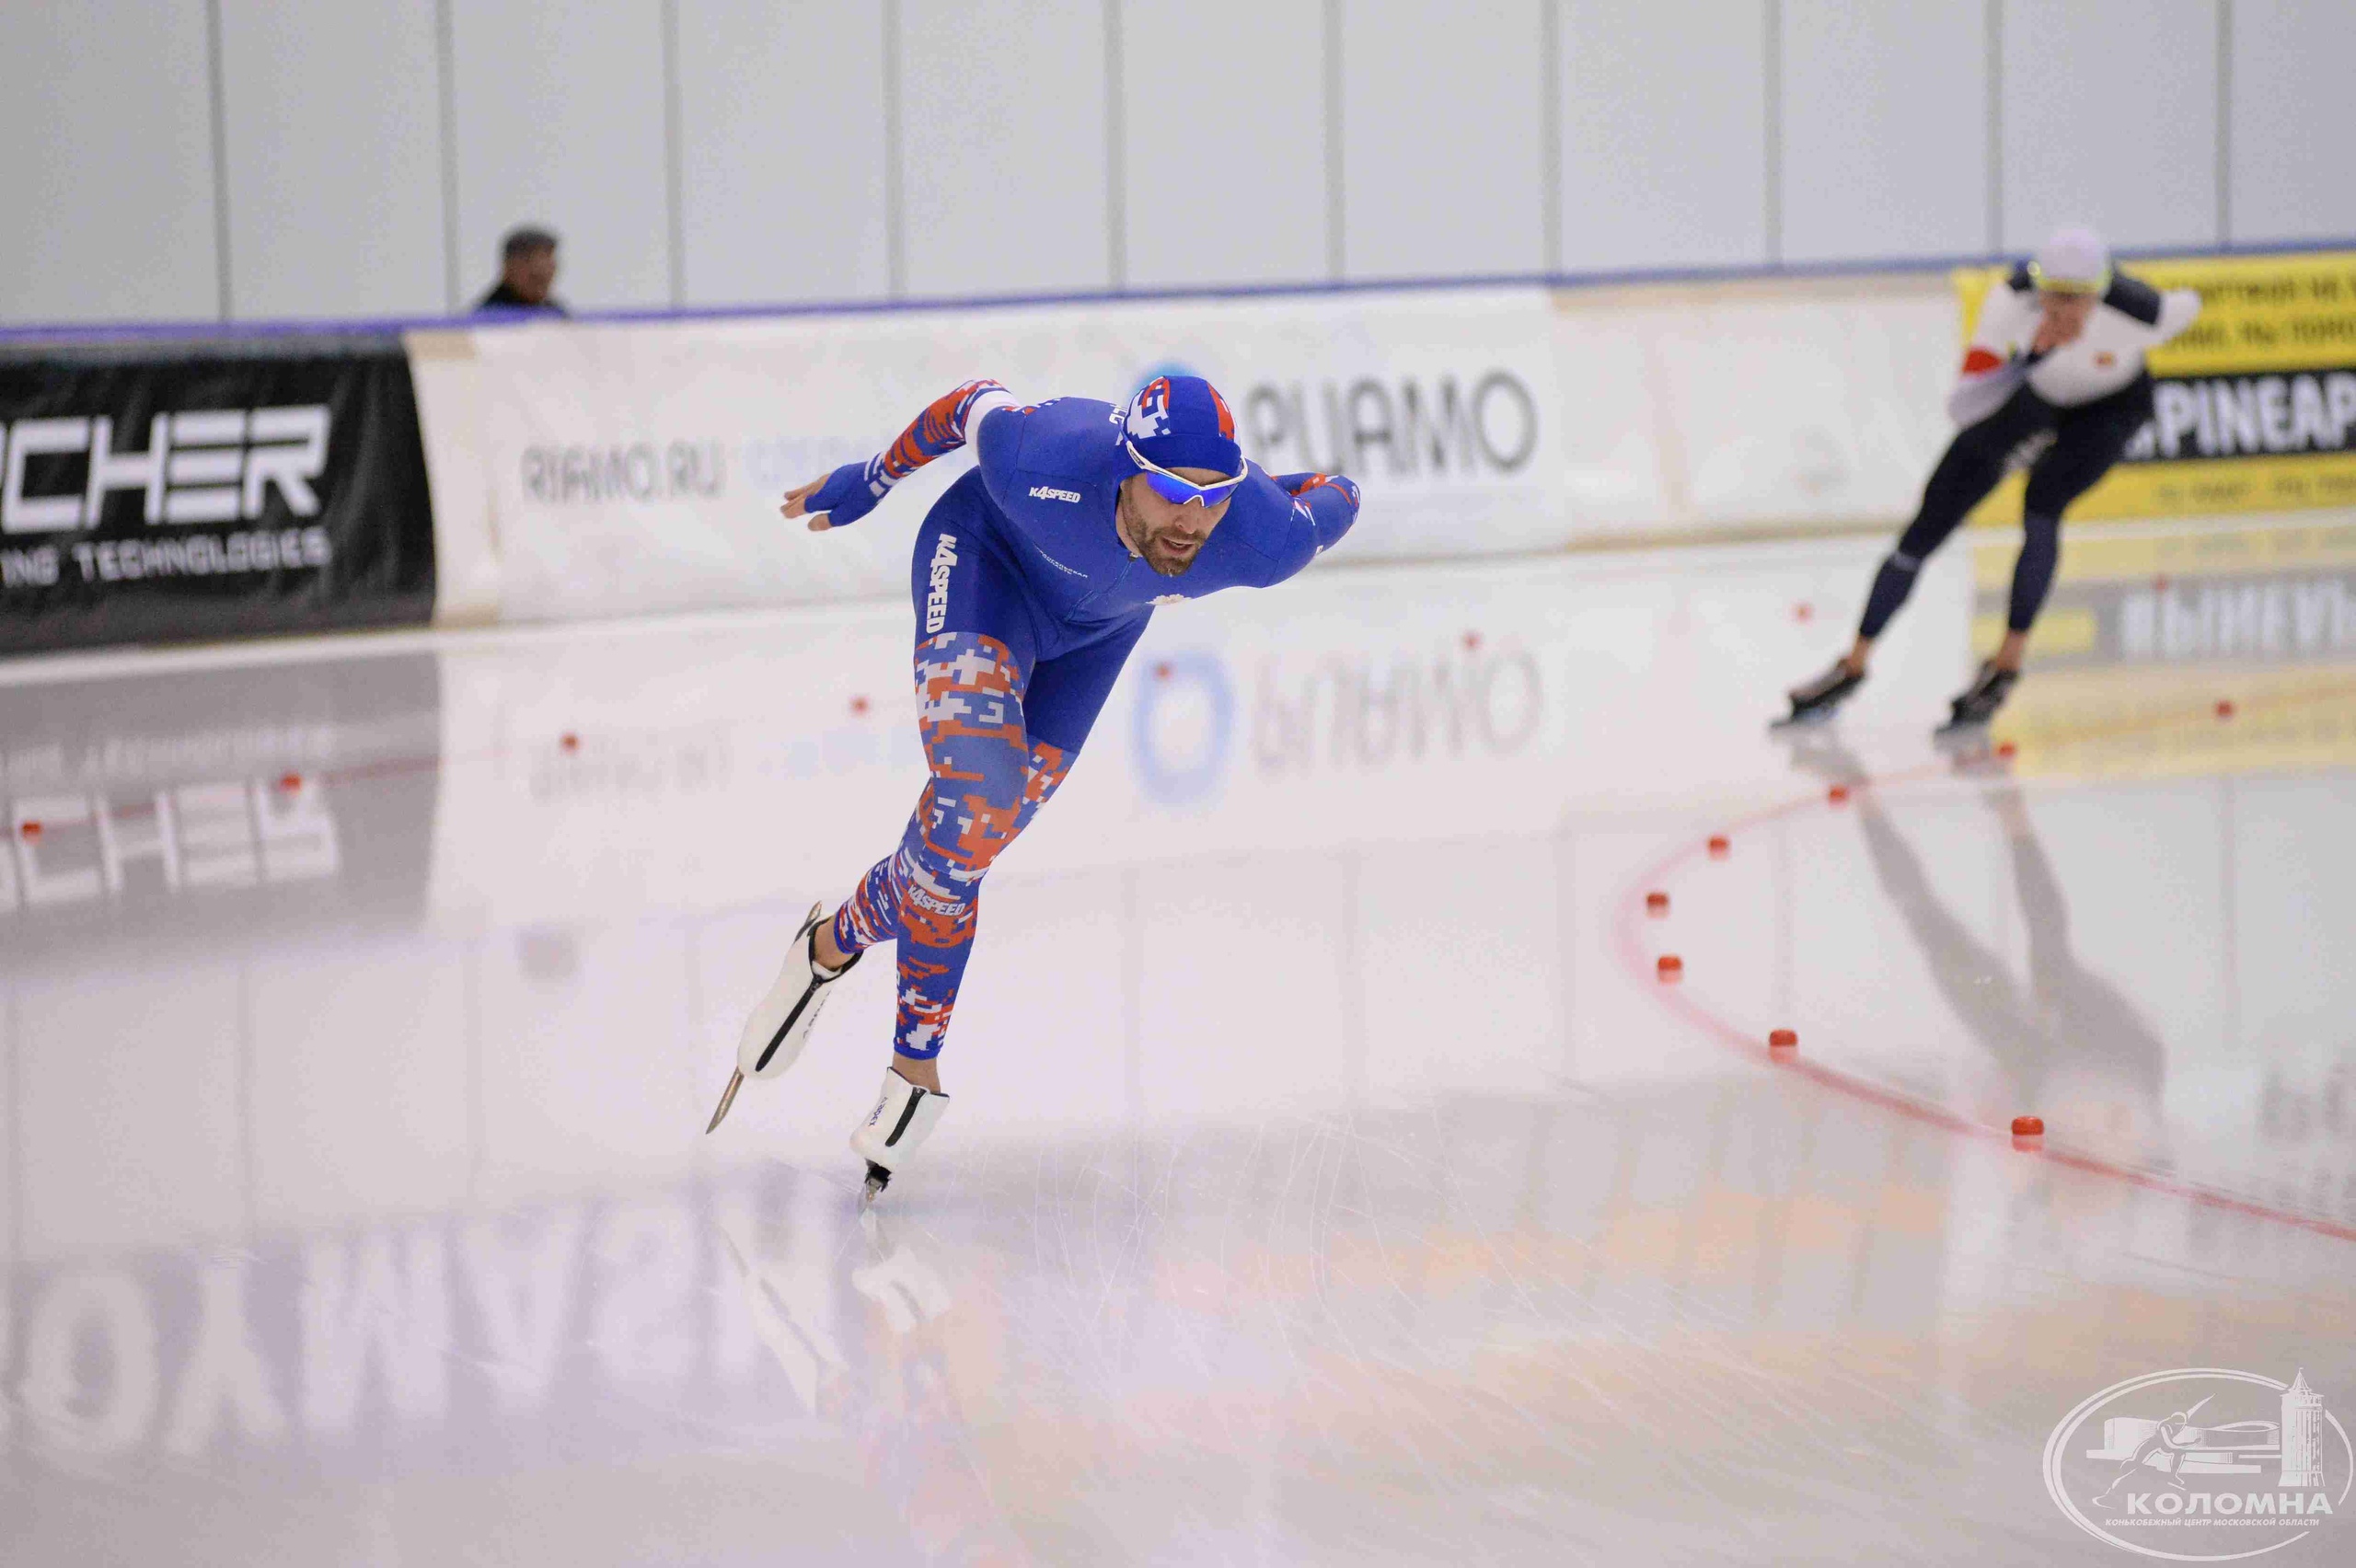 Архангельский конькобежец Александр Румянцев стал бронзовым призером чемпионата России